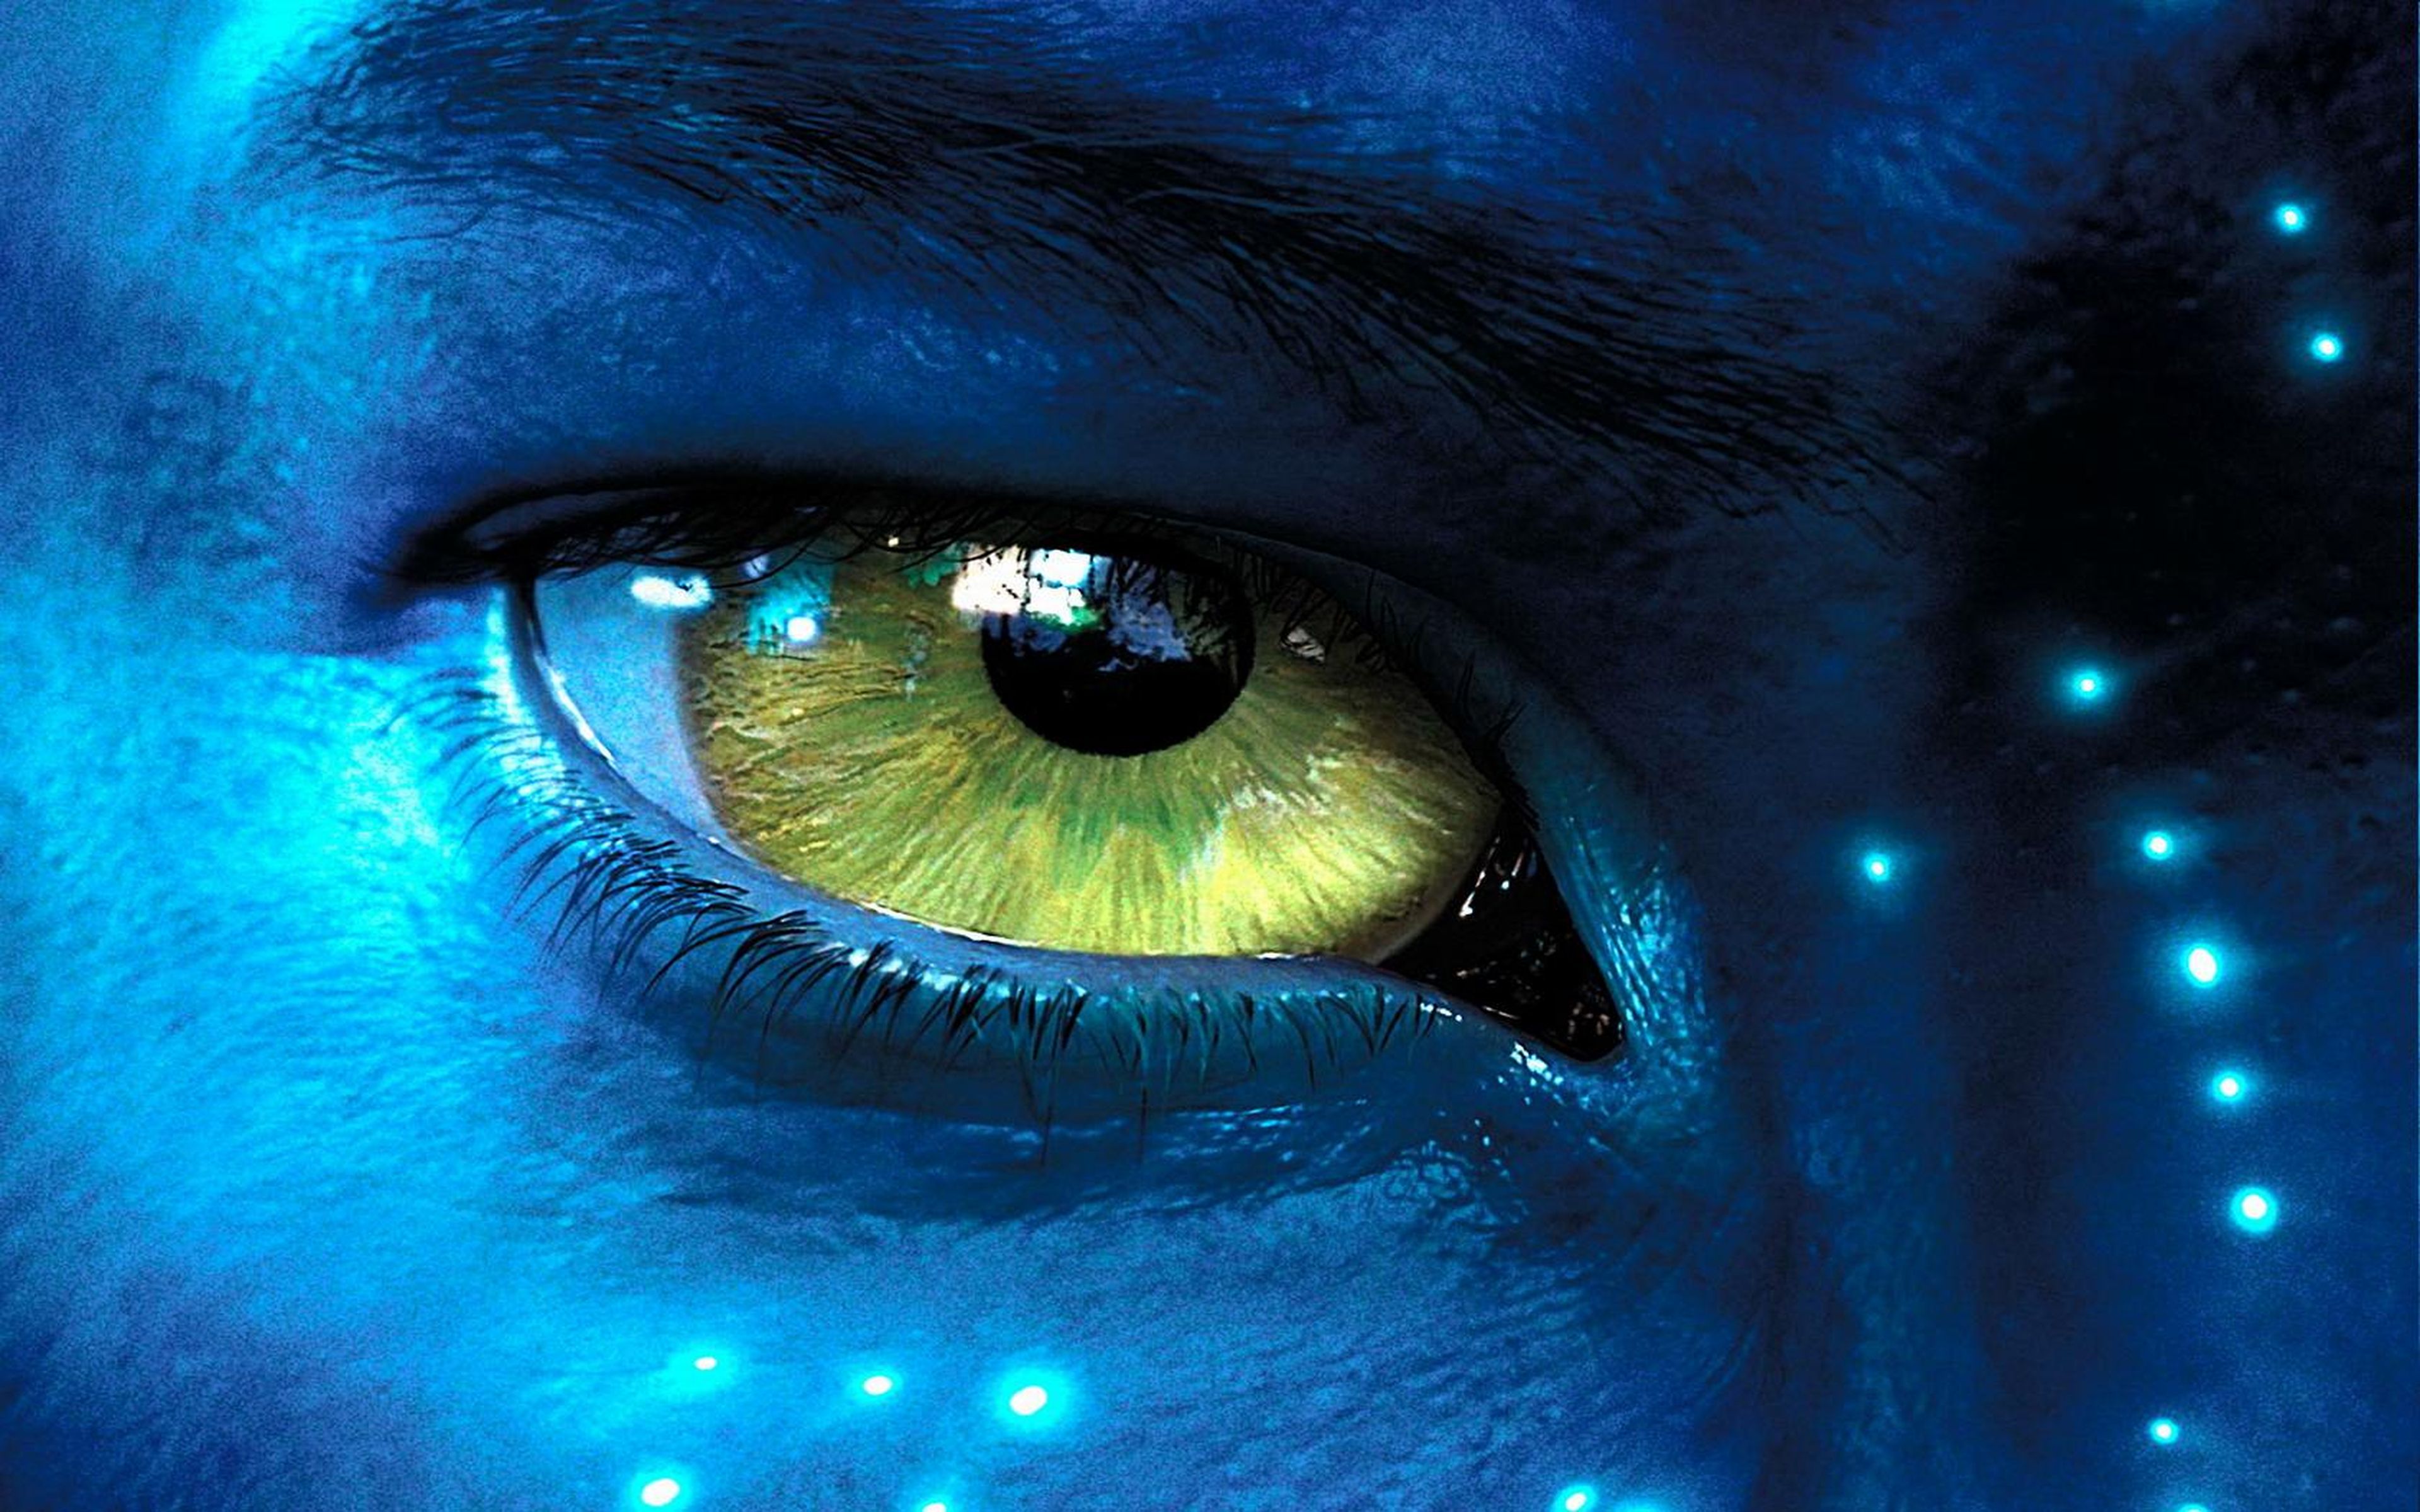 Cine de ciencia ficción: Avatar